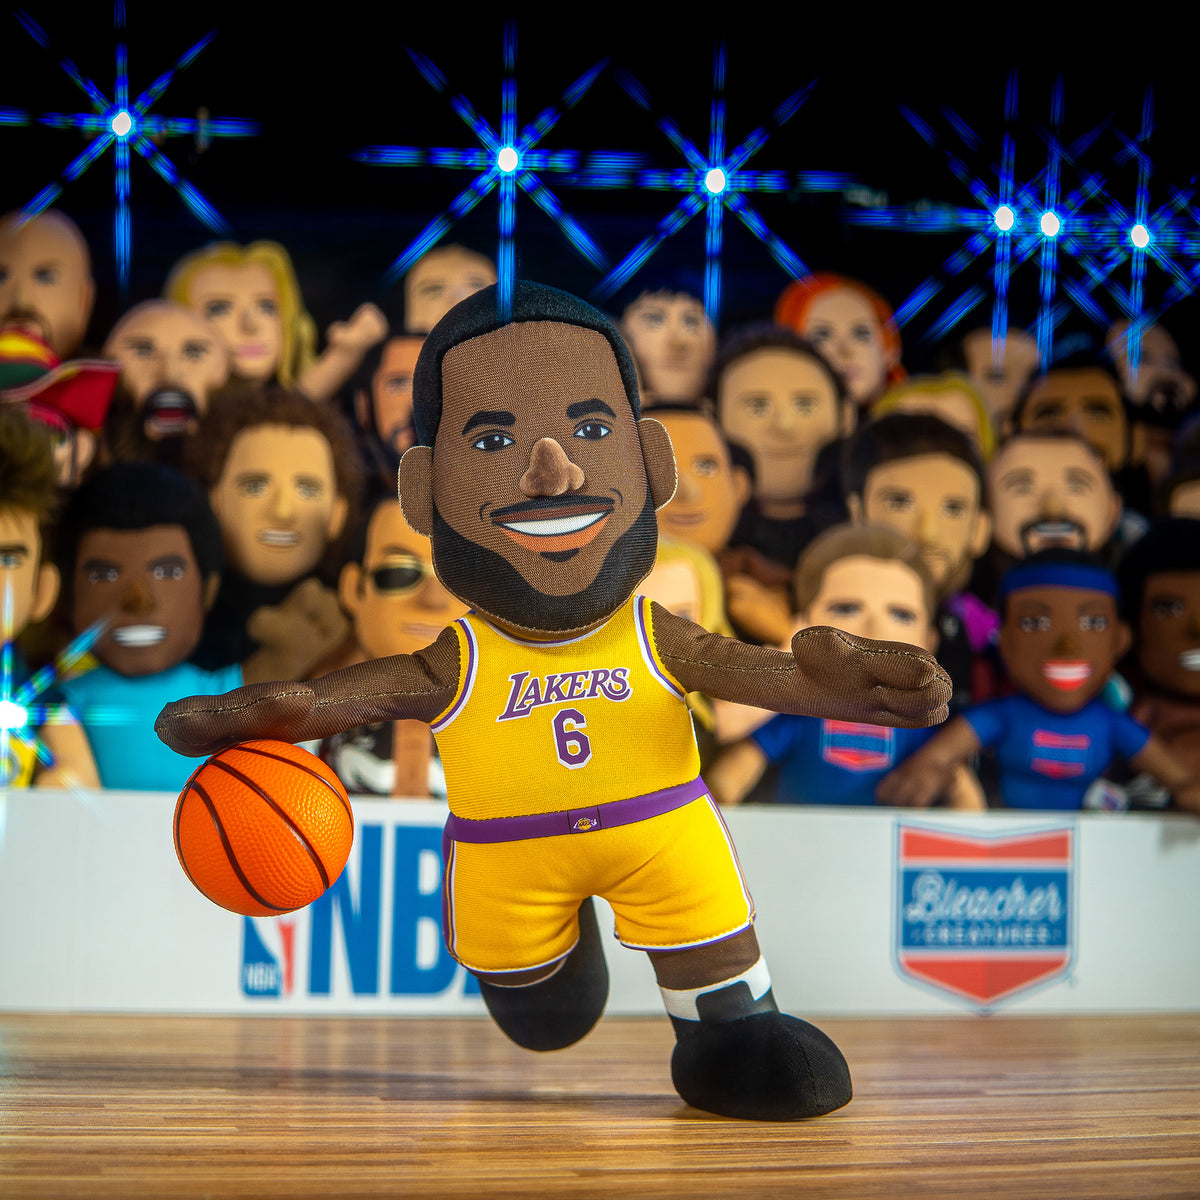 Los Angeles Lakers LeBron James 10&quot; Plush Figure